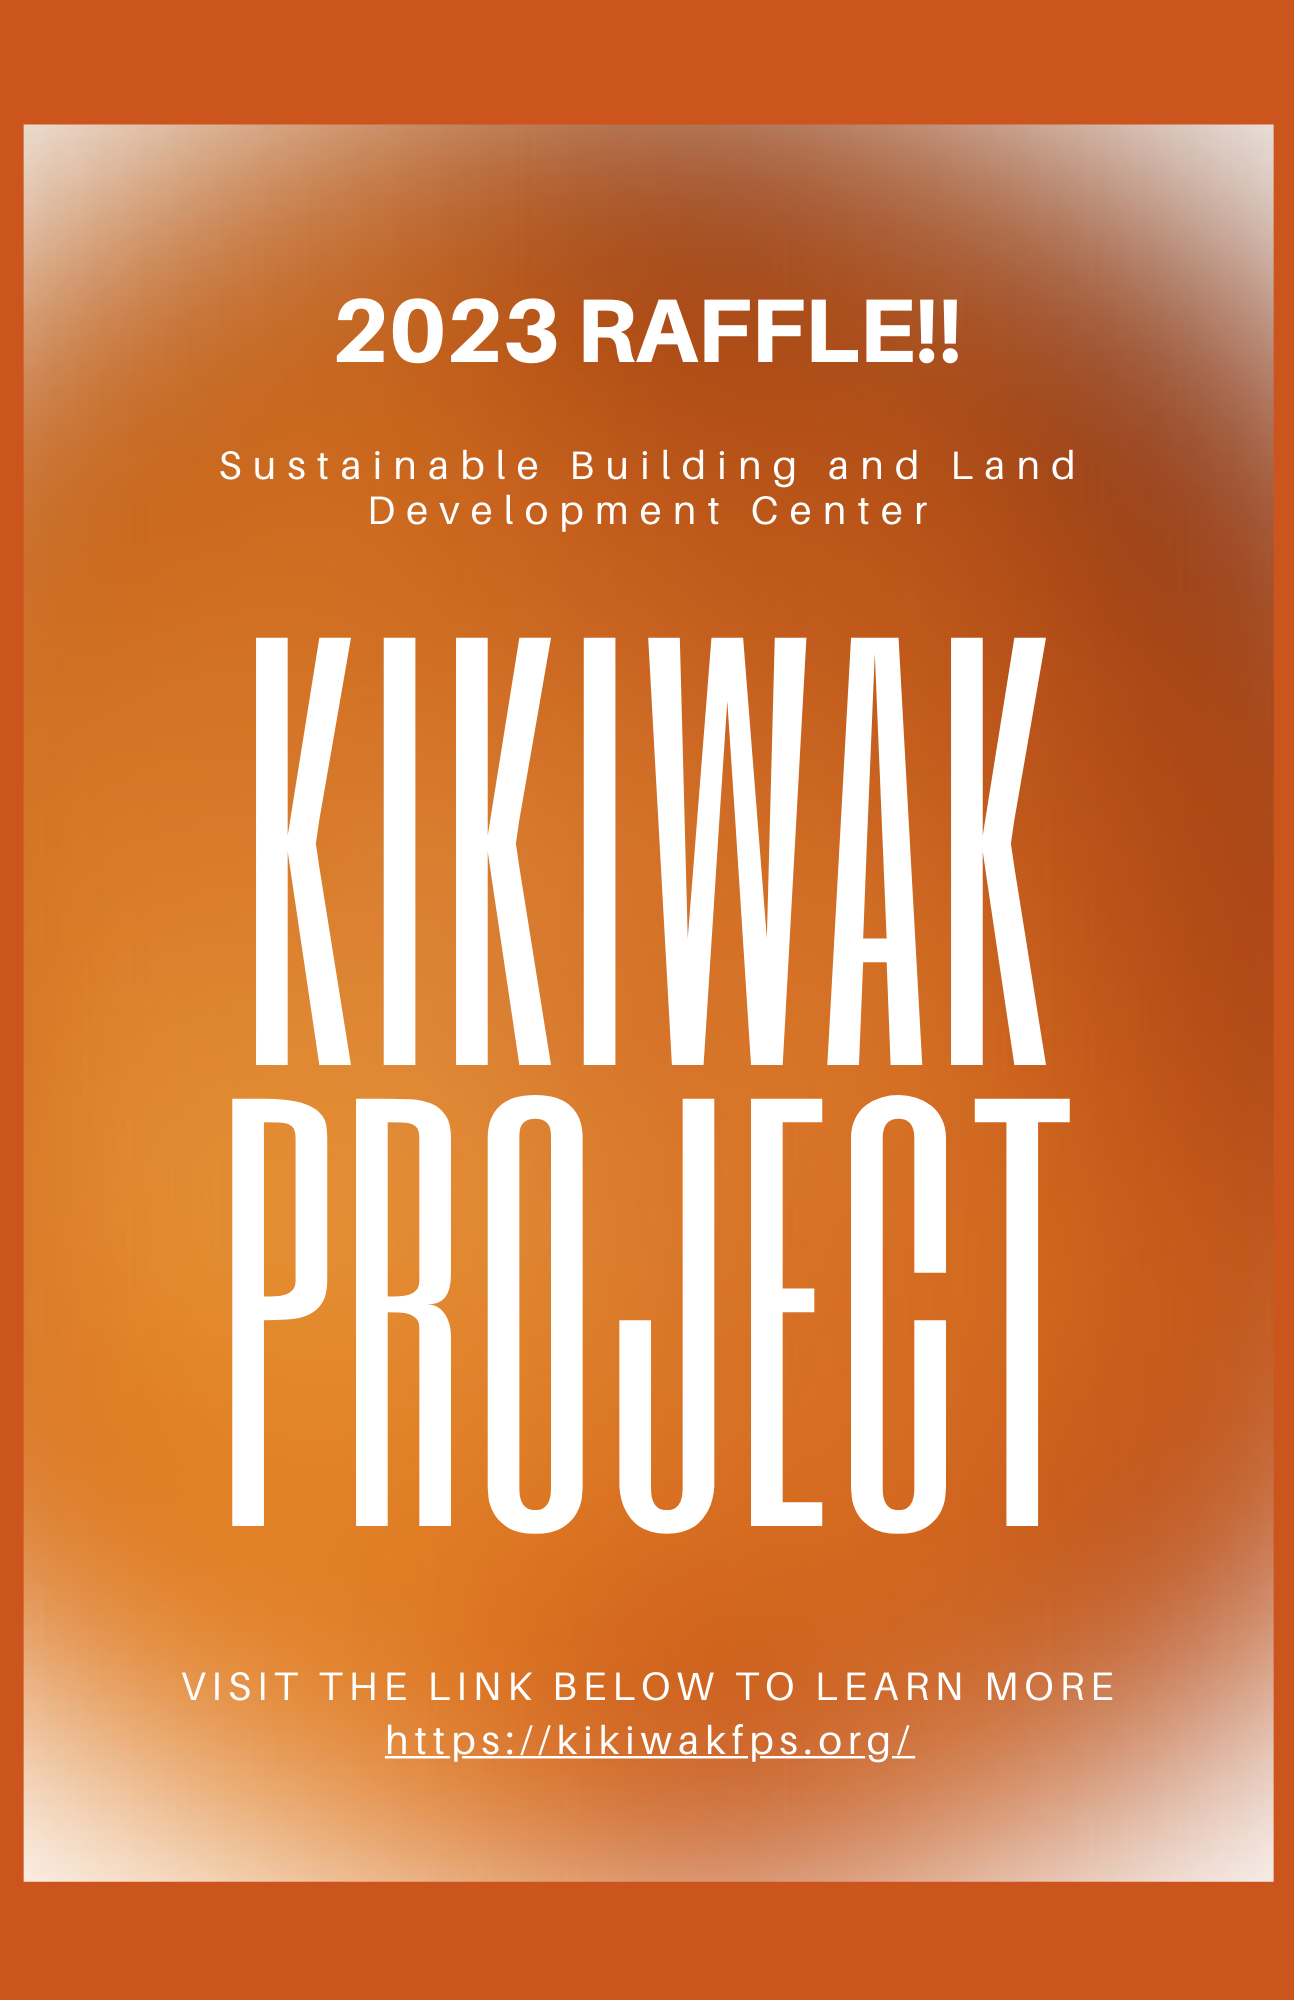 Kikiwak Project Virtual Raffle Tickets